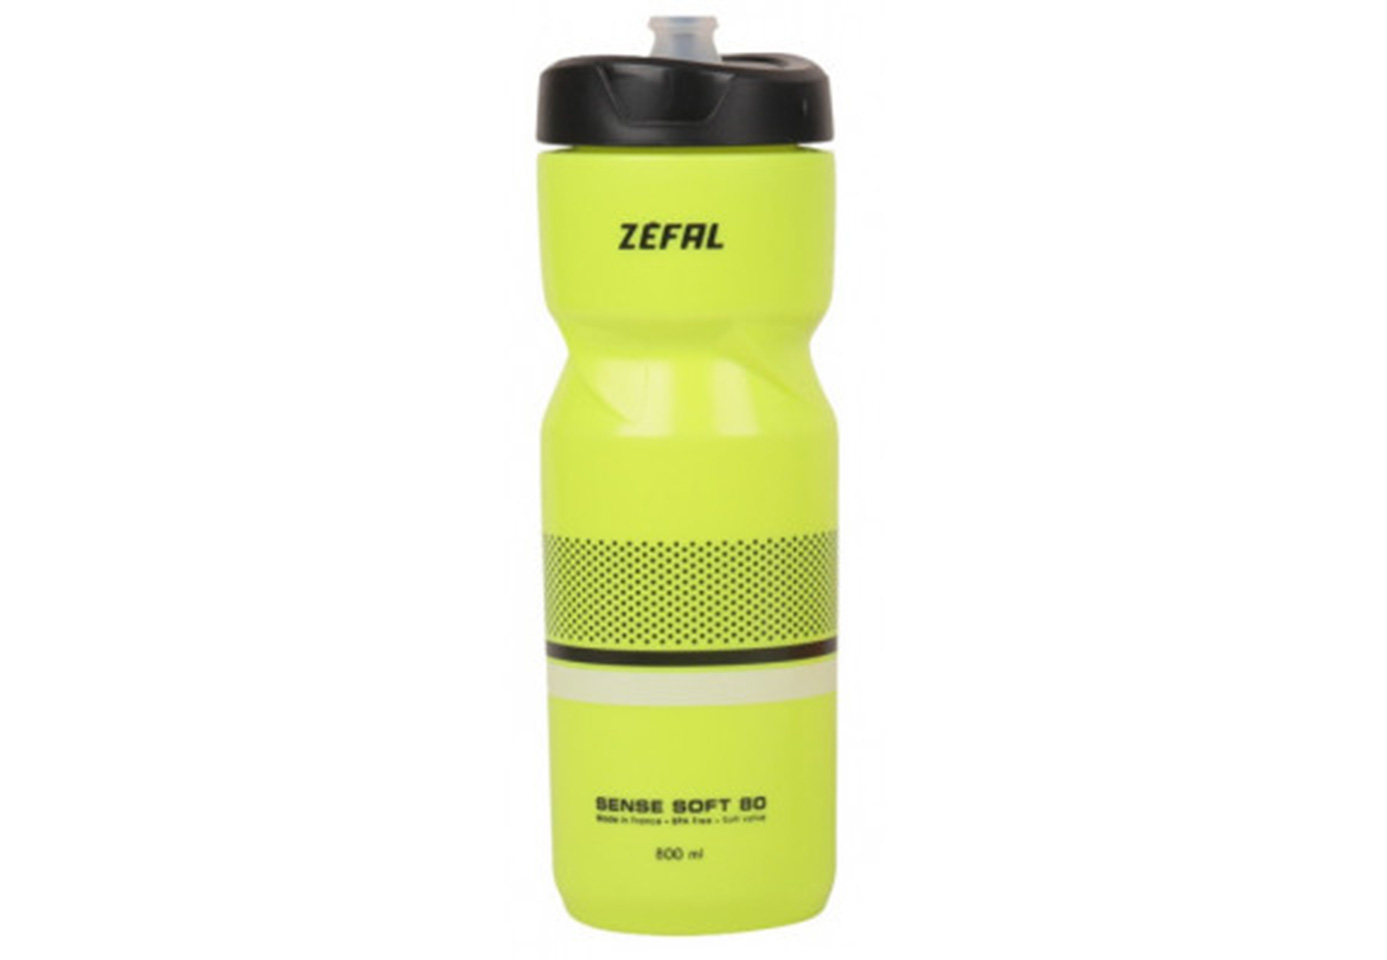  Zefal Sense Soft 65 (155I) Soft-Cap System, жовтий